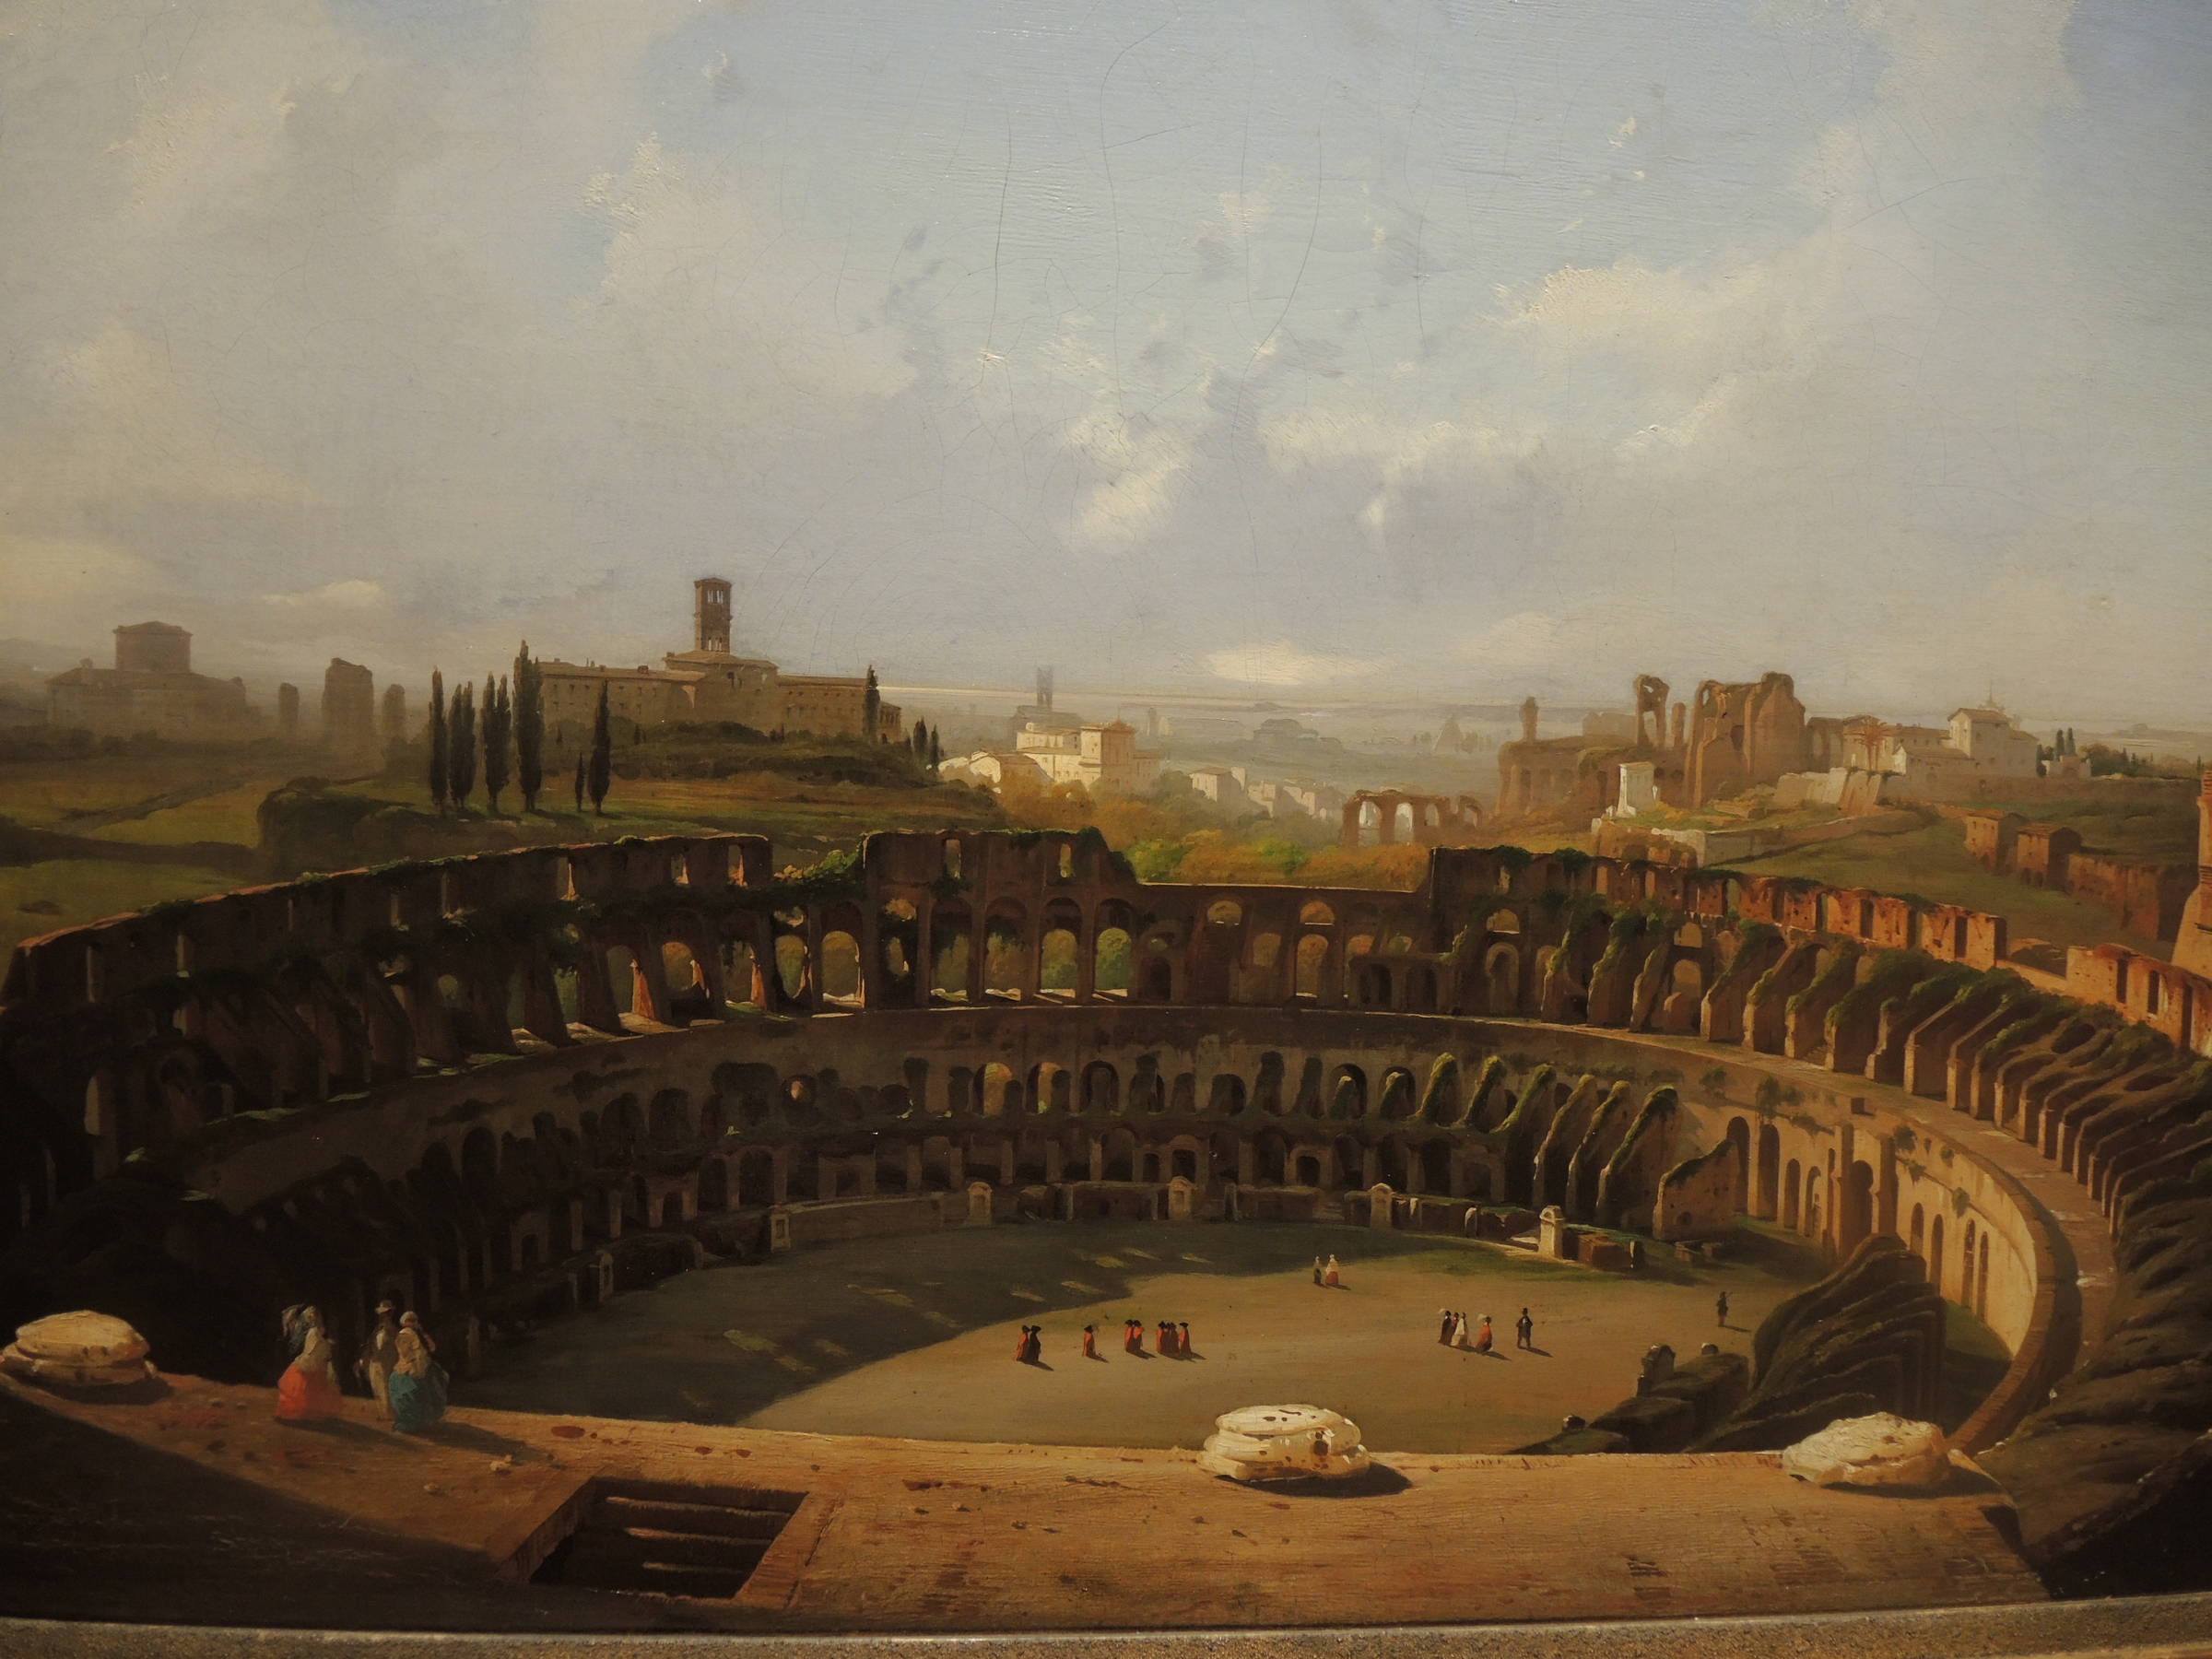 Rome, Colosseum - 1855